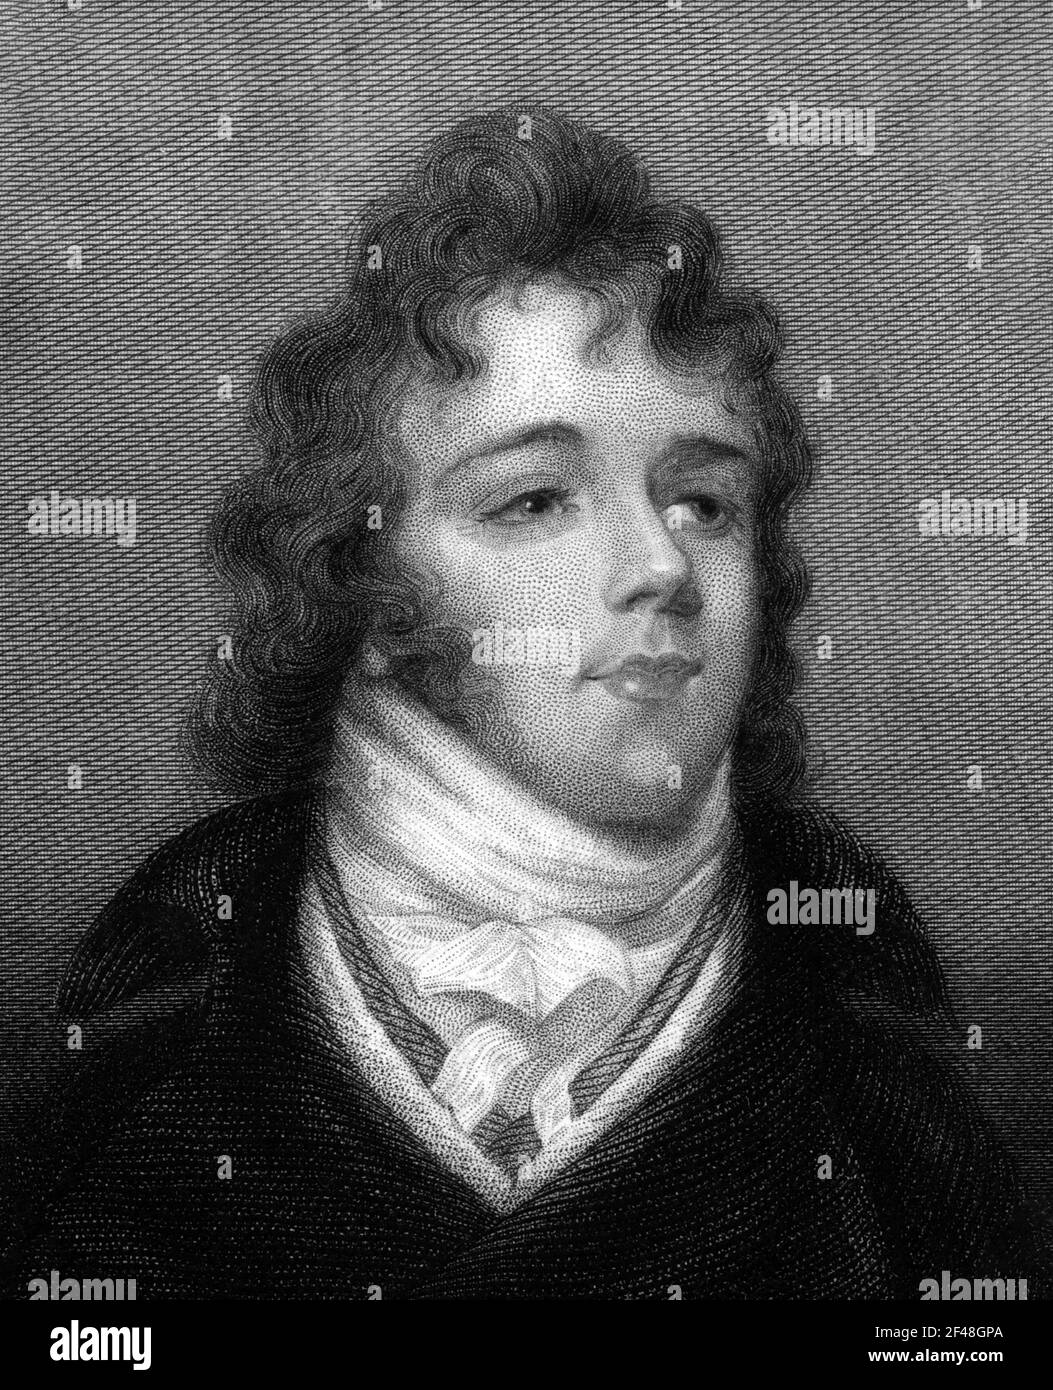 Beau Brummell. Ritratto del dandy della reggenza, George Bryan 'Beau' Brummell (1778-1840), incisione del 19 ° secolo Foto Stock